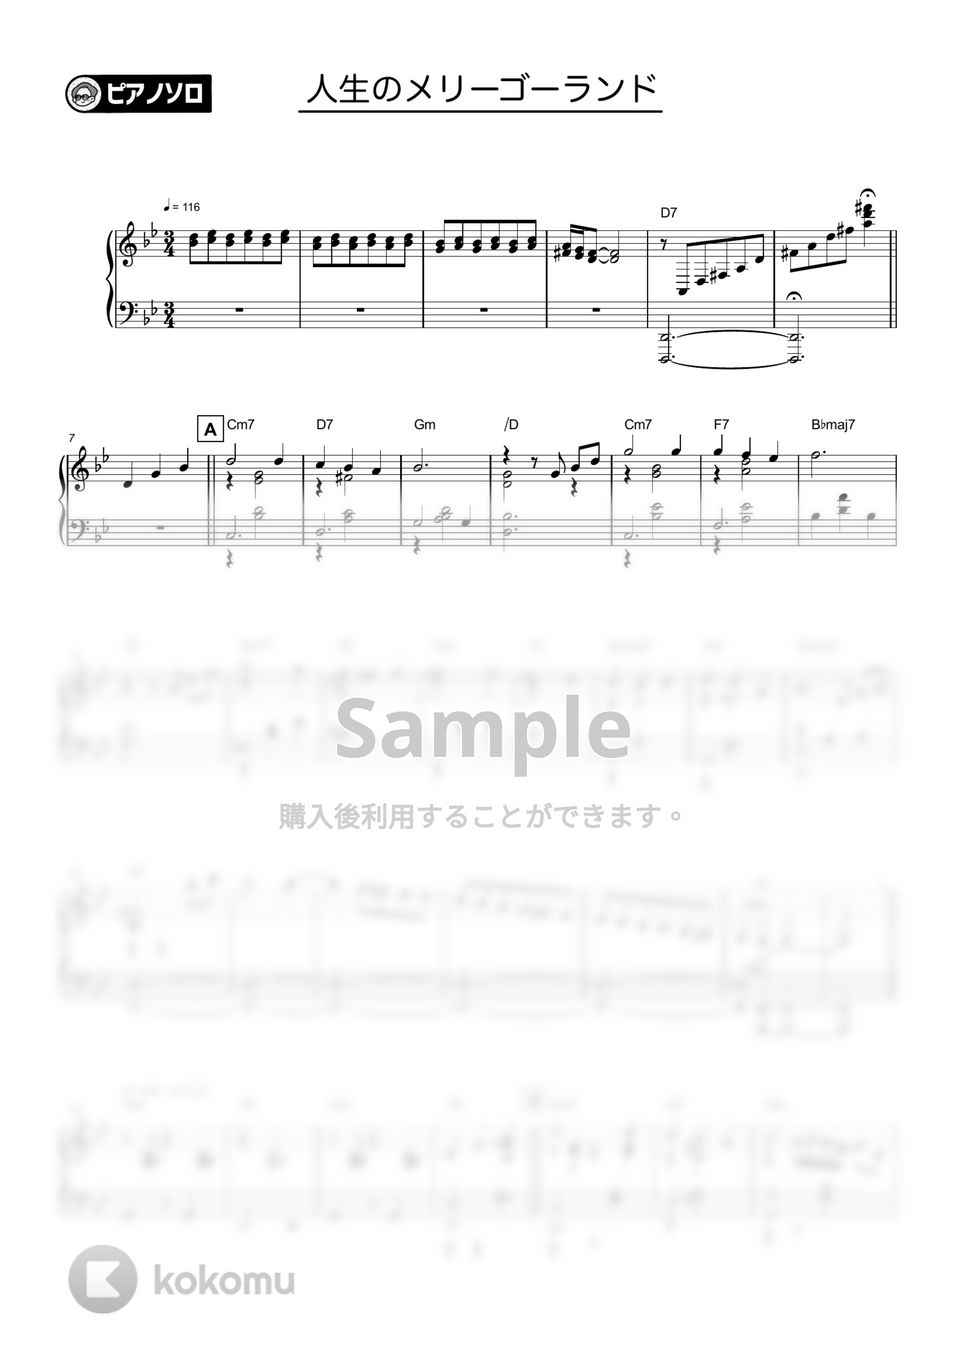 久石譲 - 人生のメリーゴーランド by シータピアノ